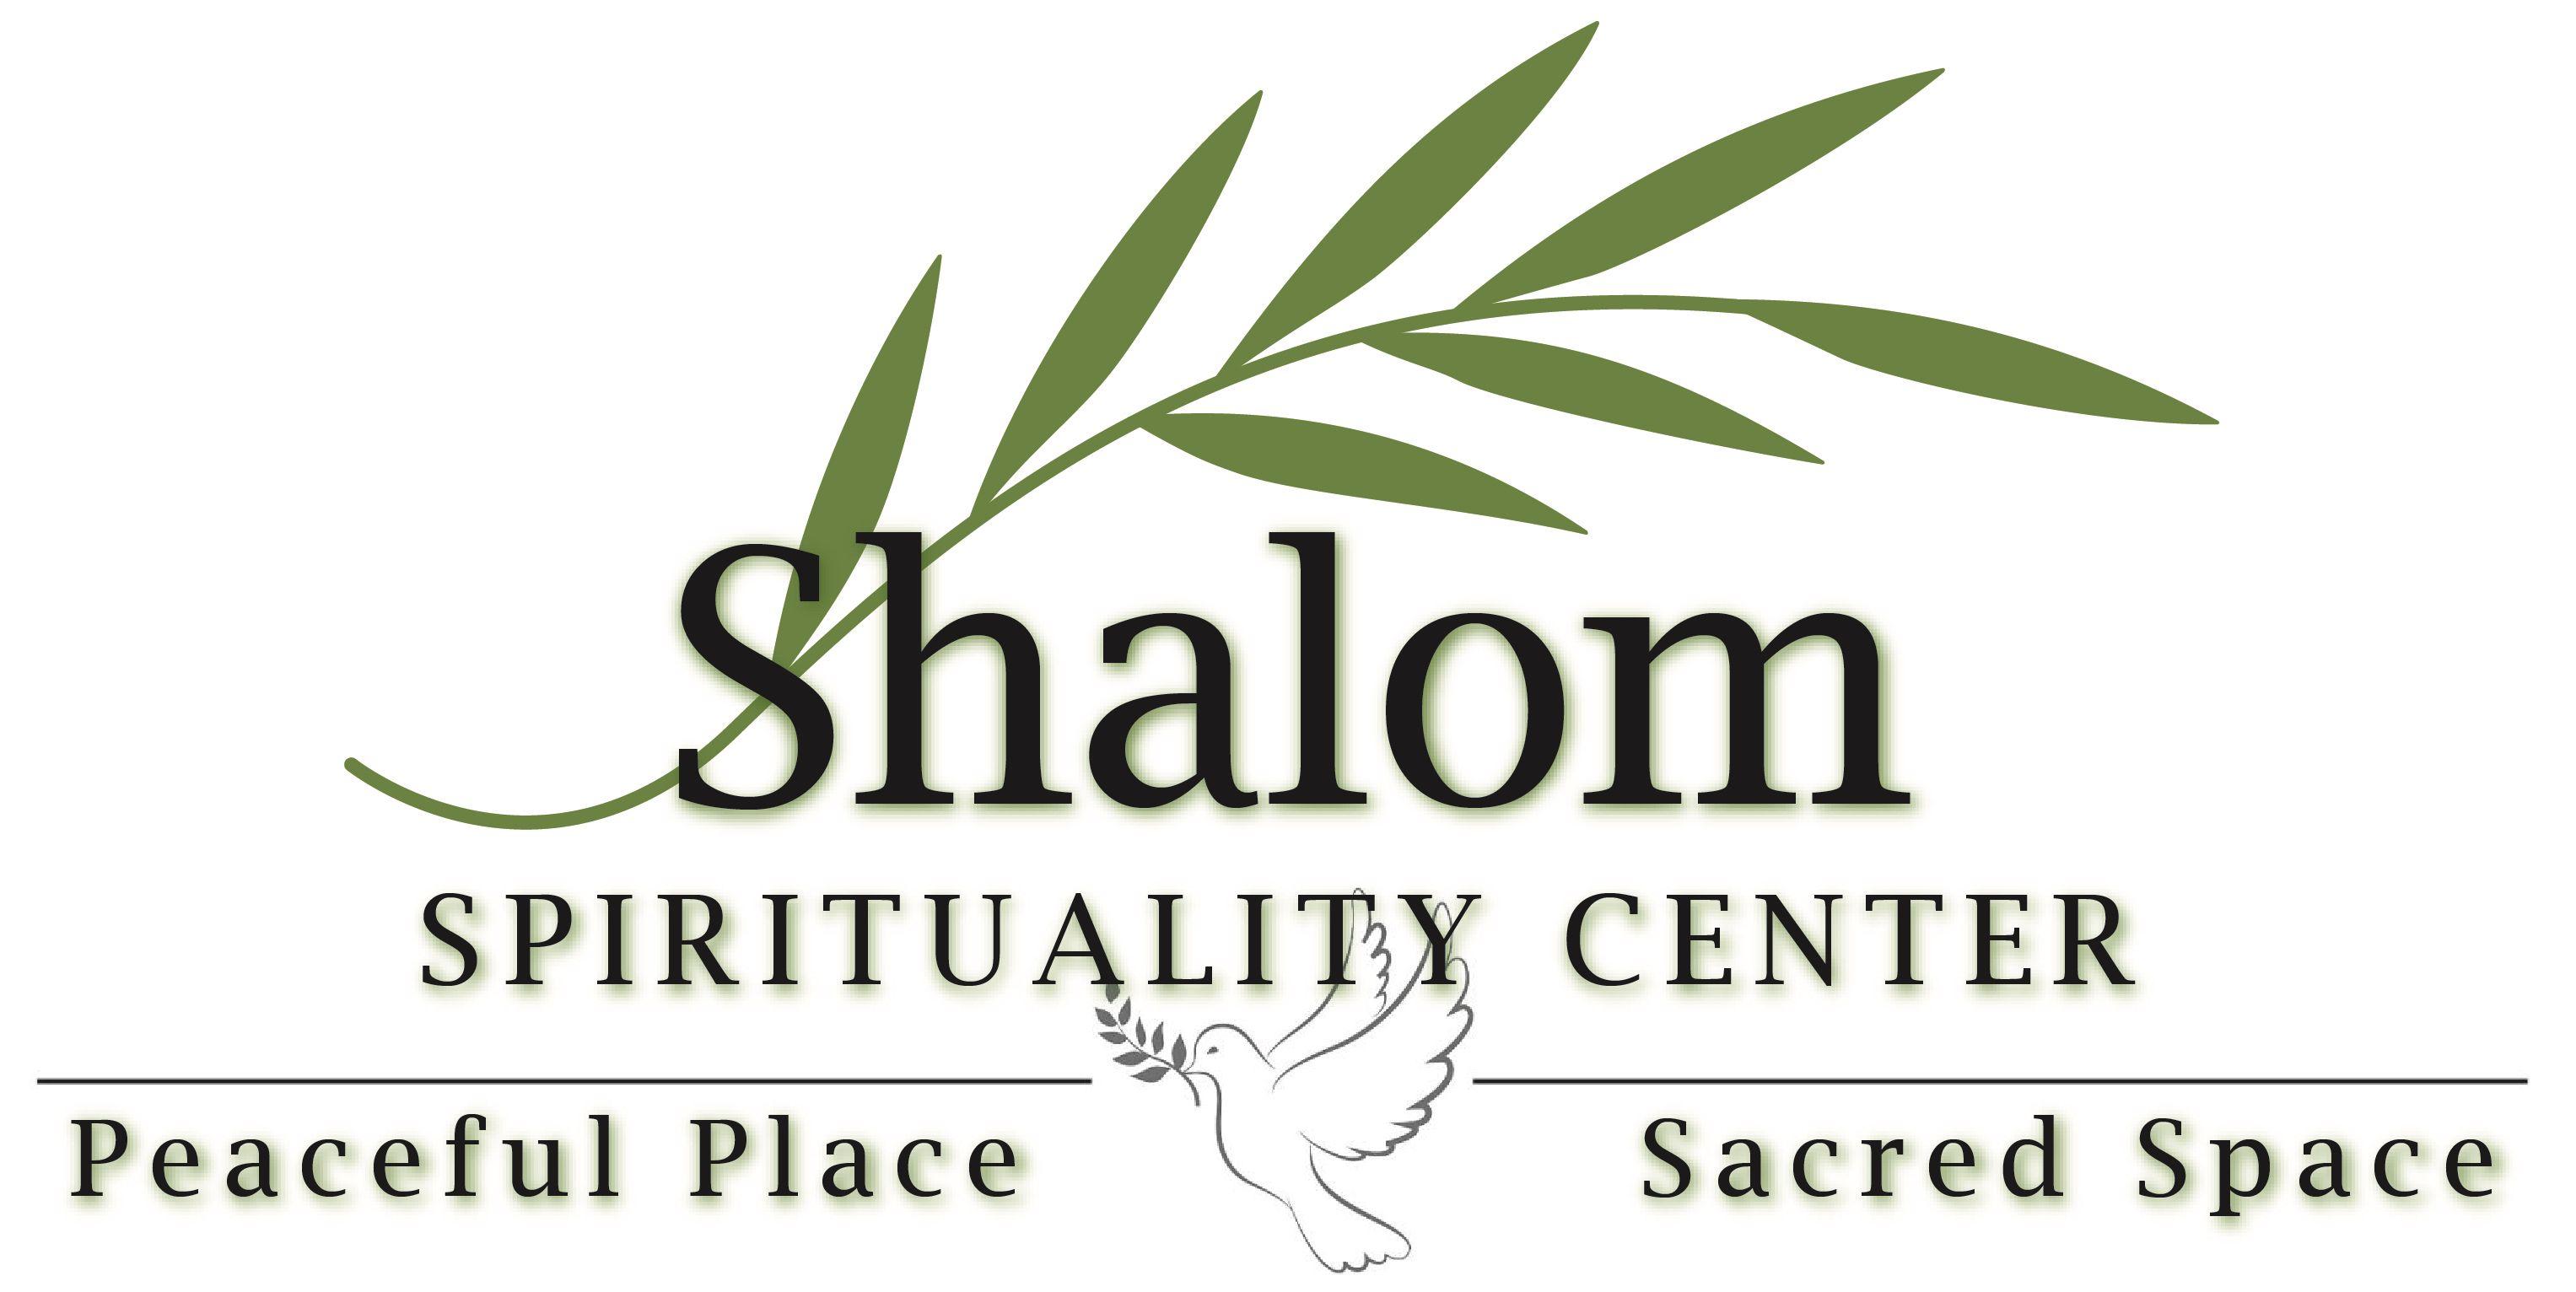 Shalom Logo - Welcome to Shalom Spirituality Center